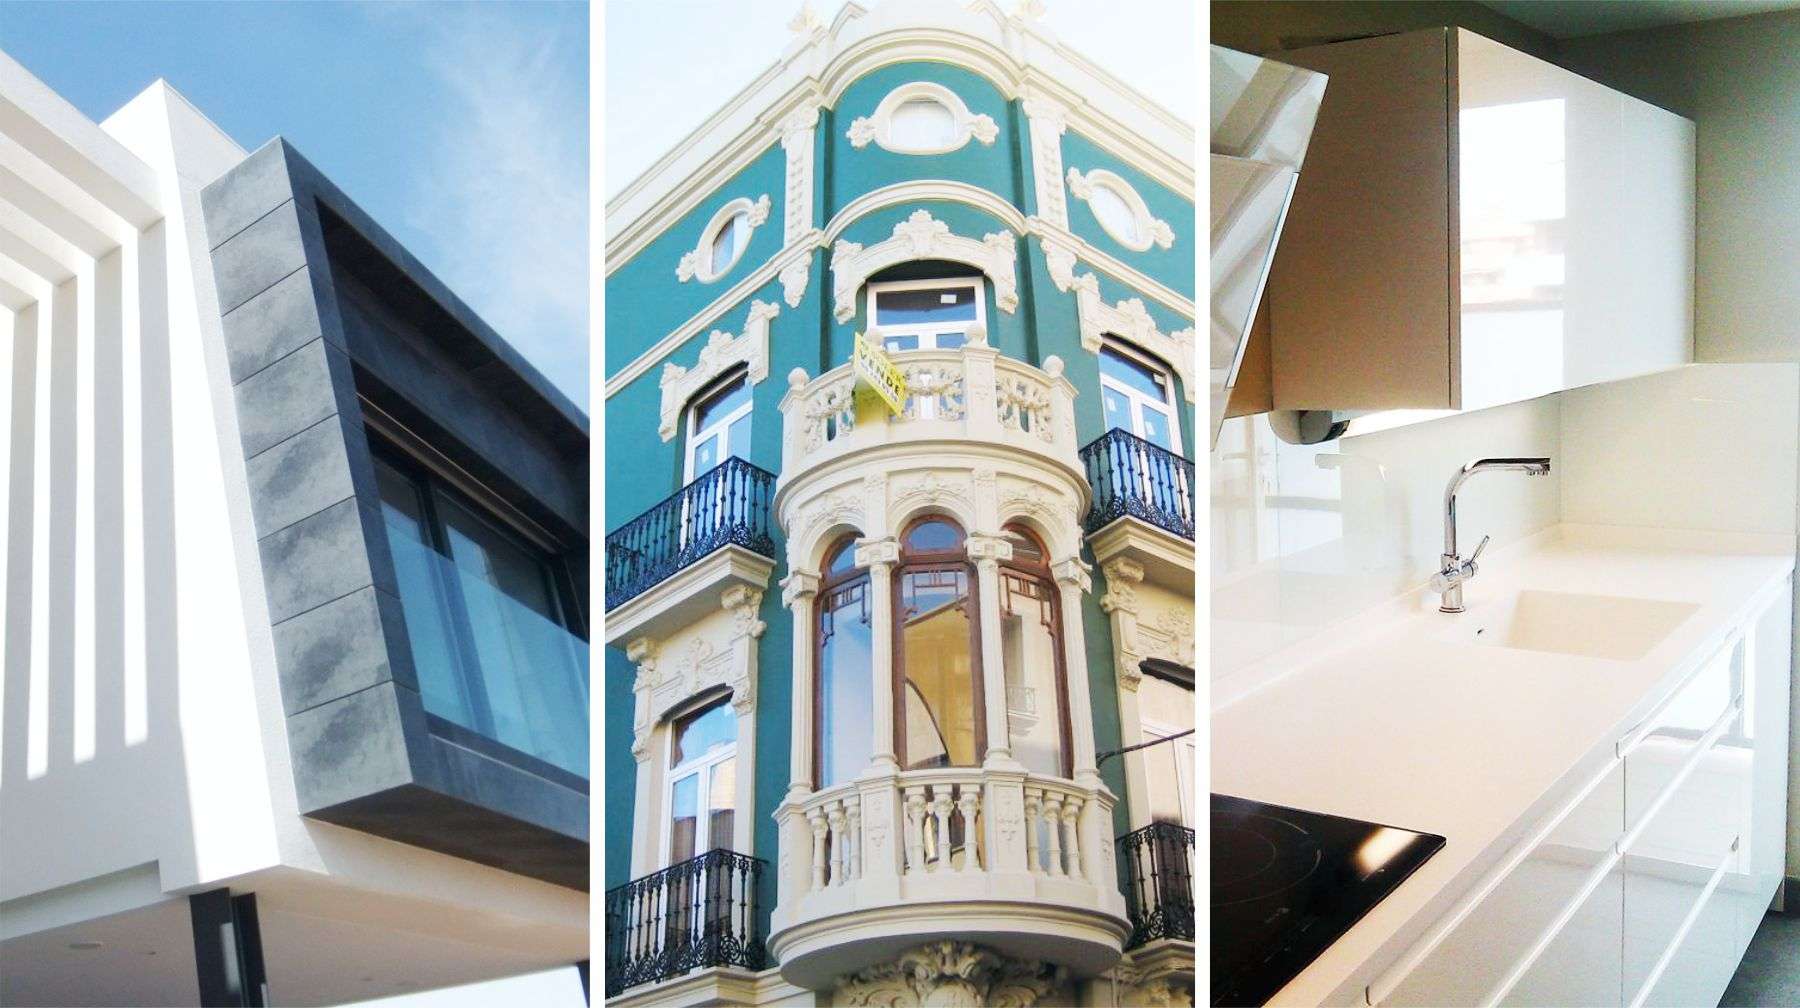 Empresa constructora en Valencia para construcción de viviendas, rehabilitación de edificios y reformas en general